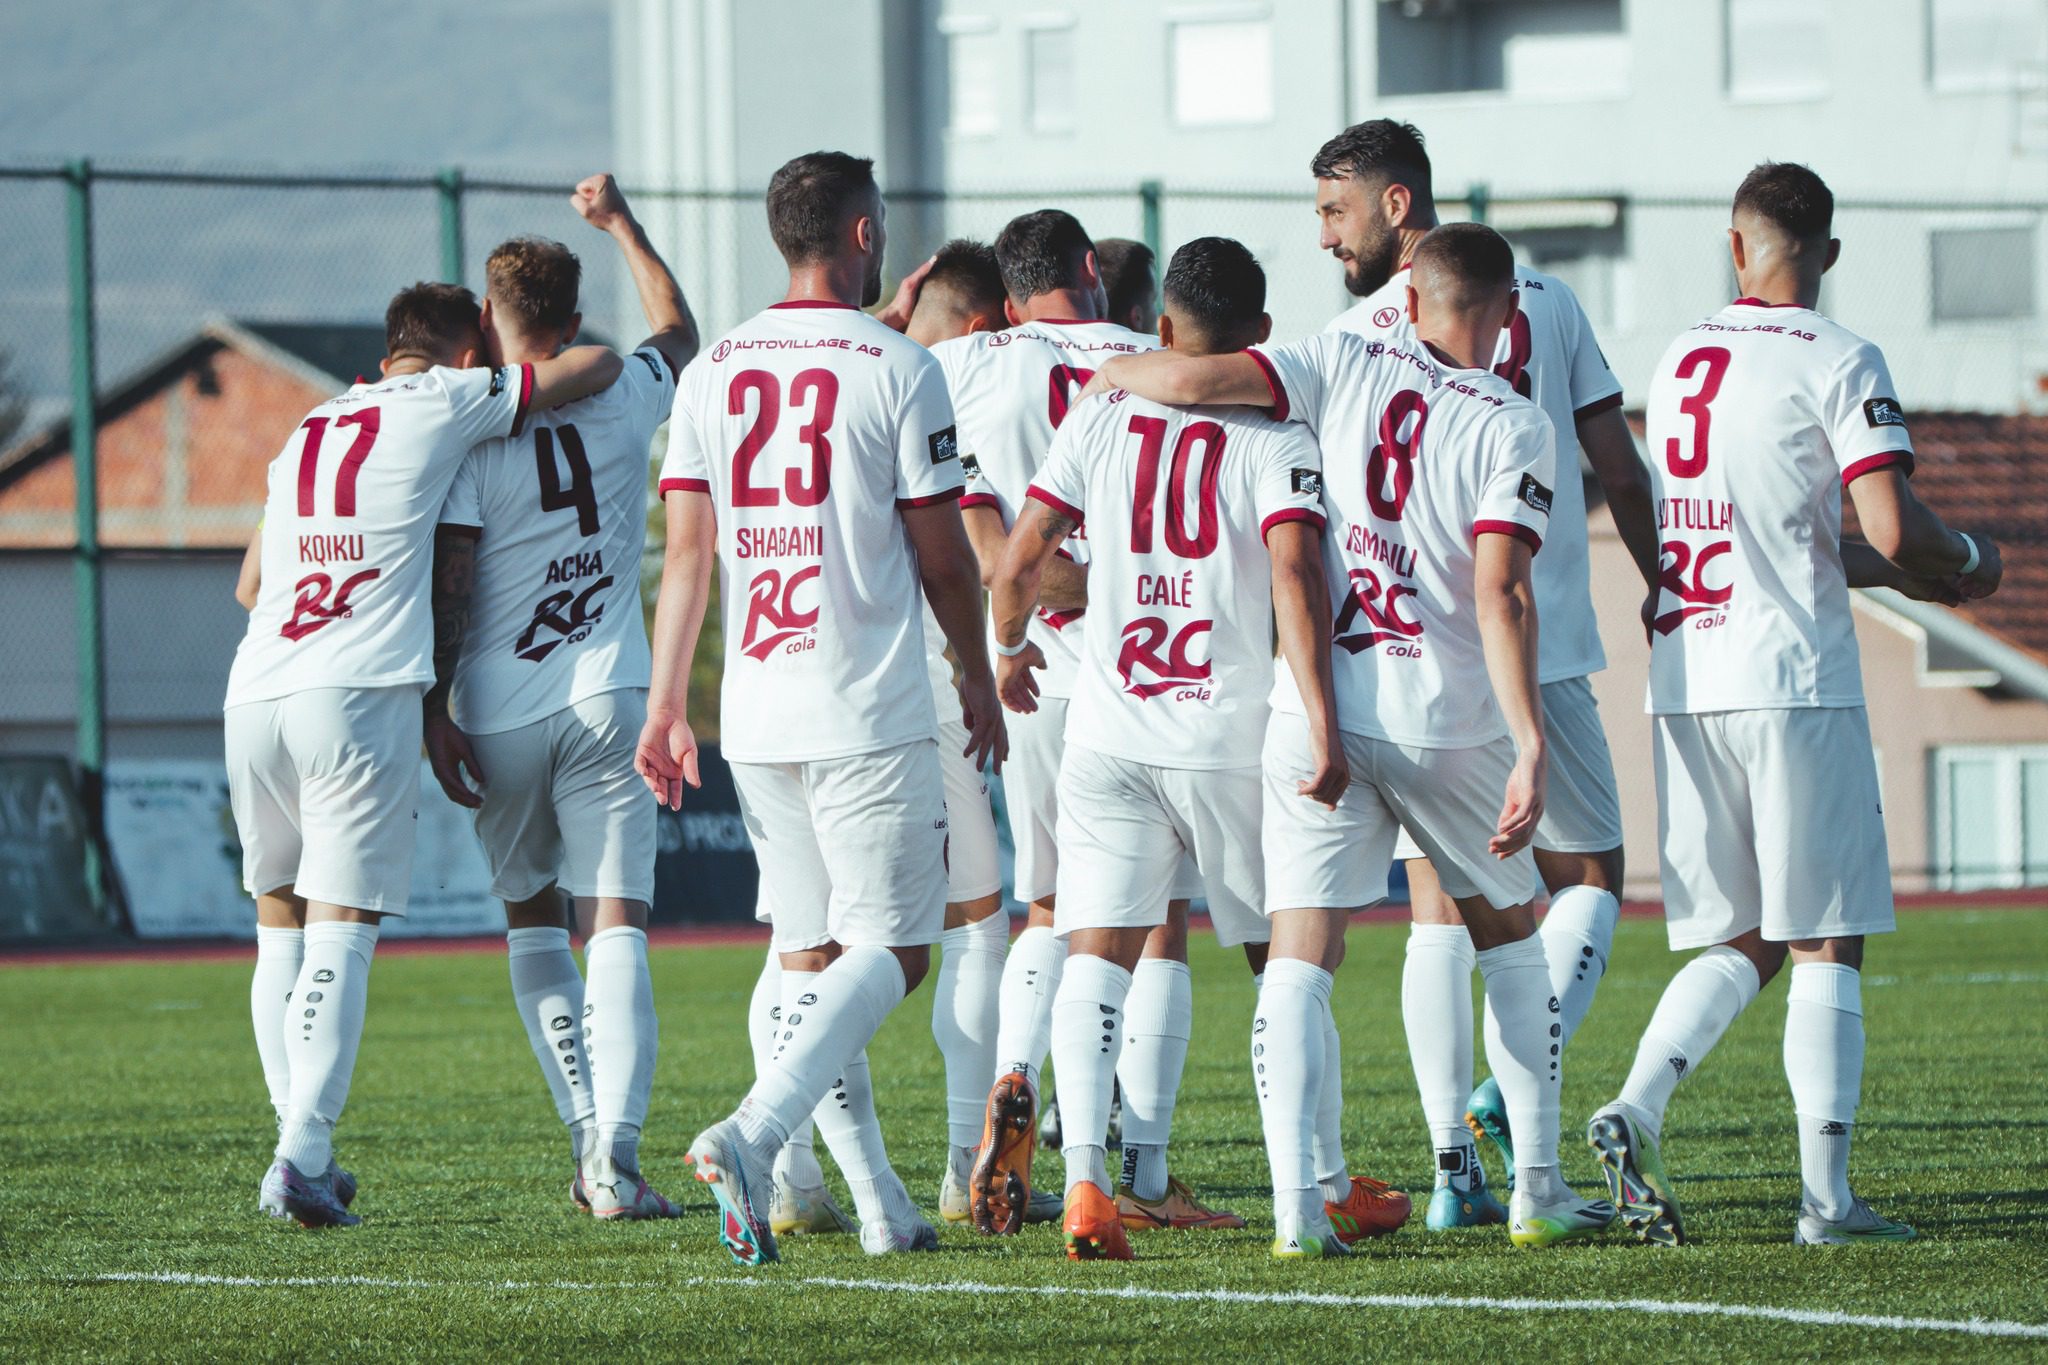 SC Gjilani ndan rrugët me dy futbollistë